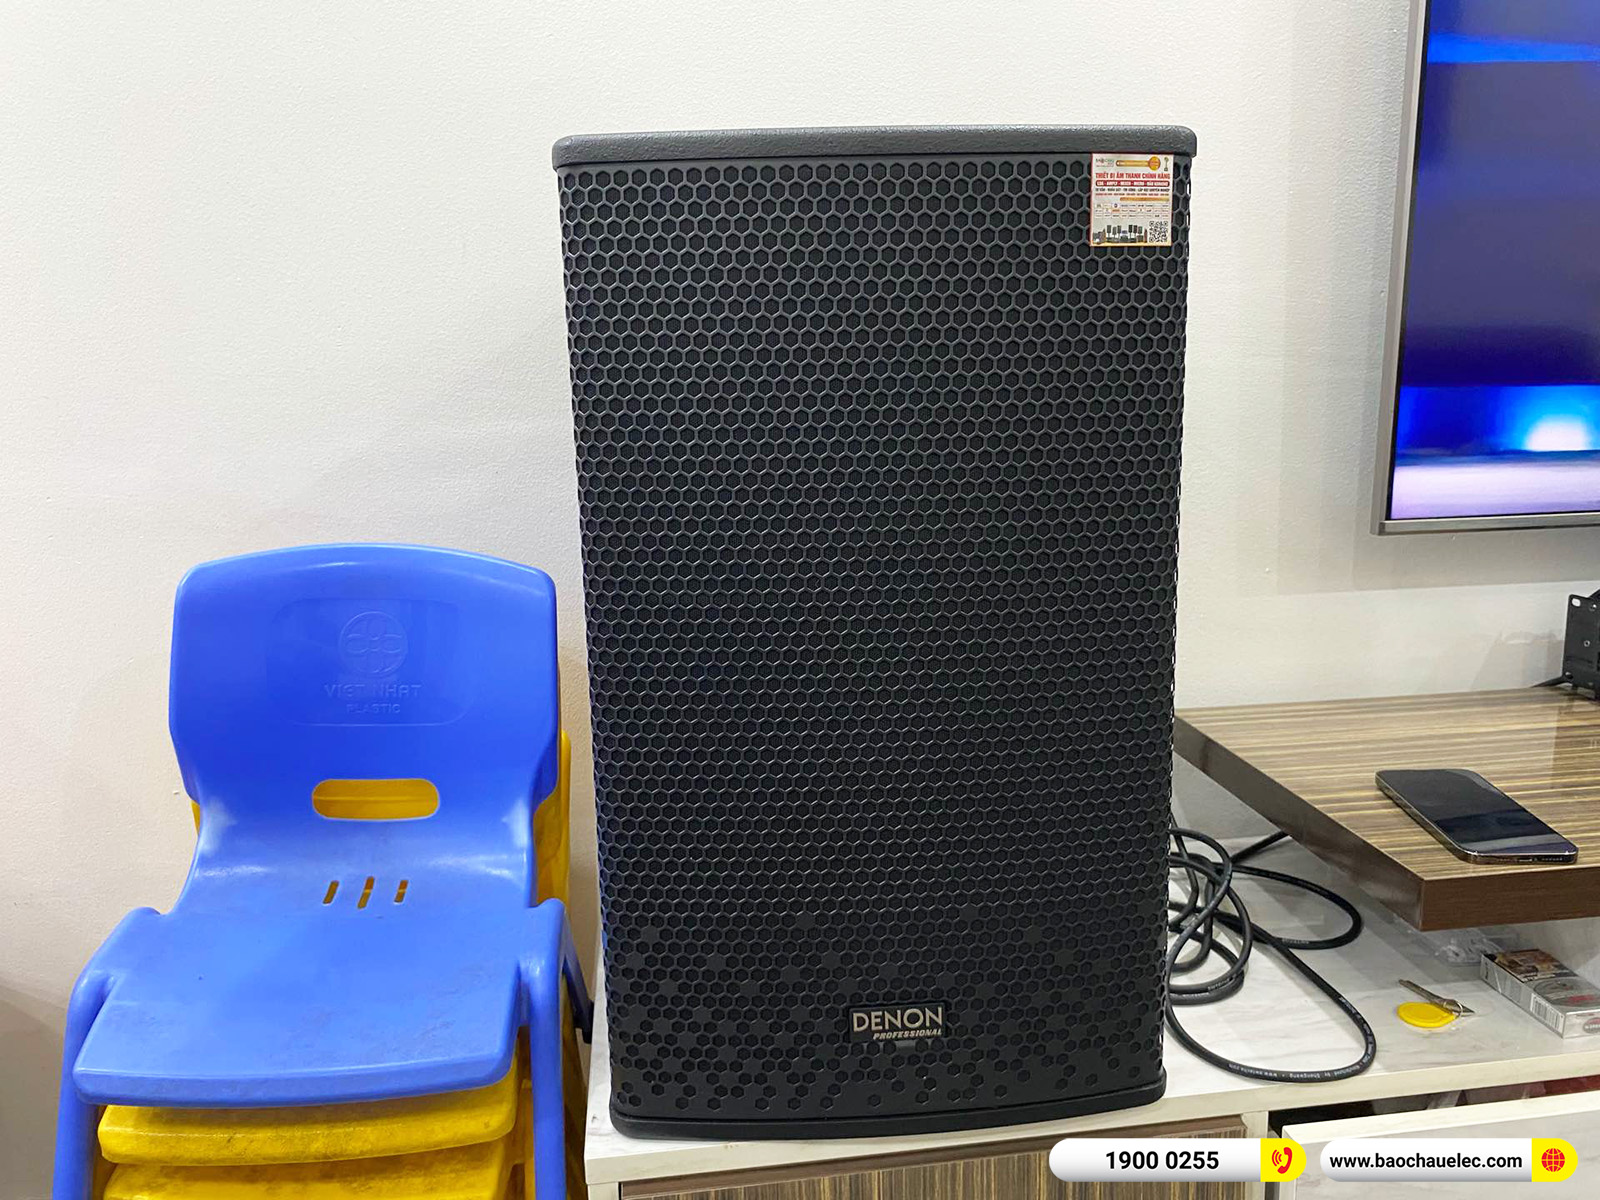 Lắp đặt dàn karaoke Denon hơn 32tr cho anh Hiển tại Hà Nội